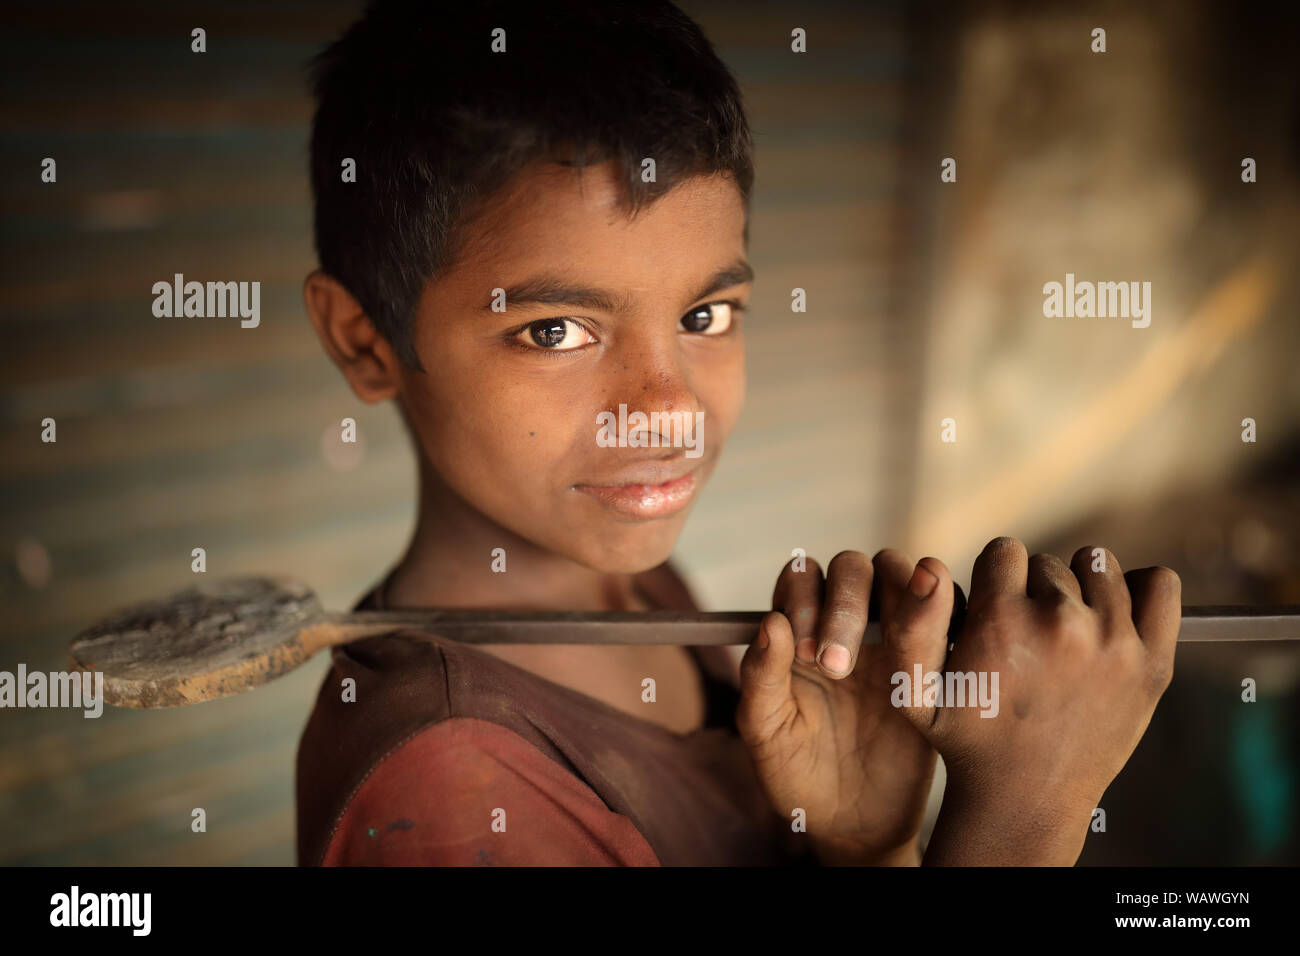 Kind Arbeiter auf einer Werft in Dhaka, Bangladesh. Bangladesch hat über 4,7 Millionen Kinder zwischen 5 und 14 Jahren. Stockfoto